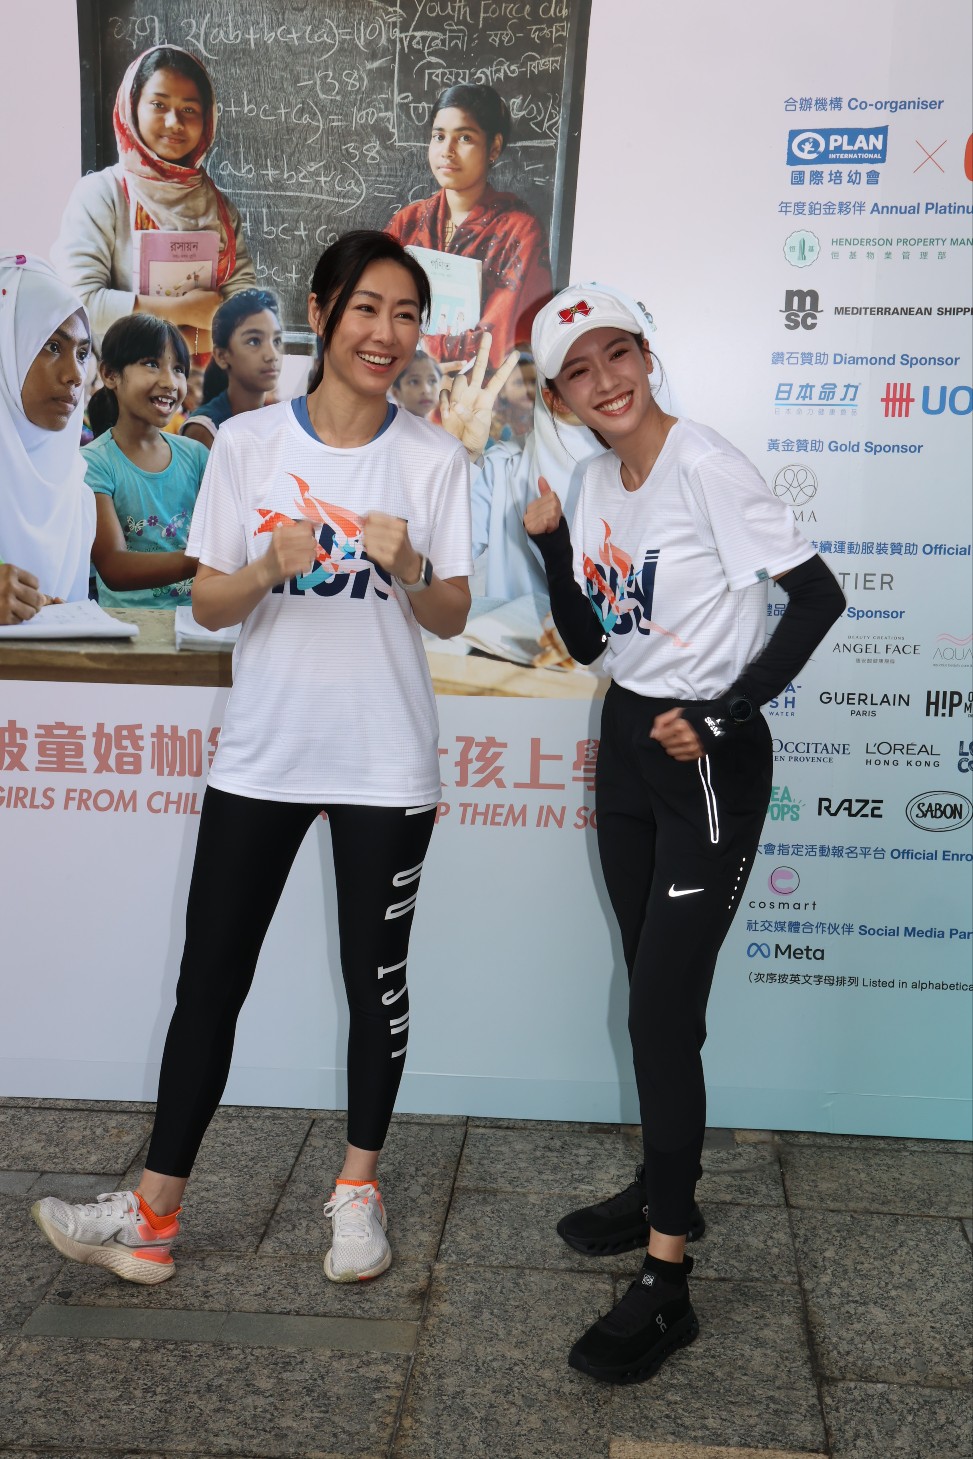 蔡思贝和胡定欣表示会参加3公里赛程。